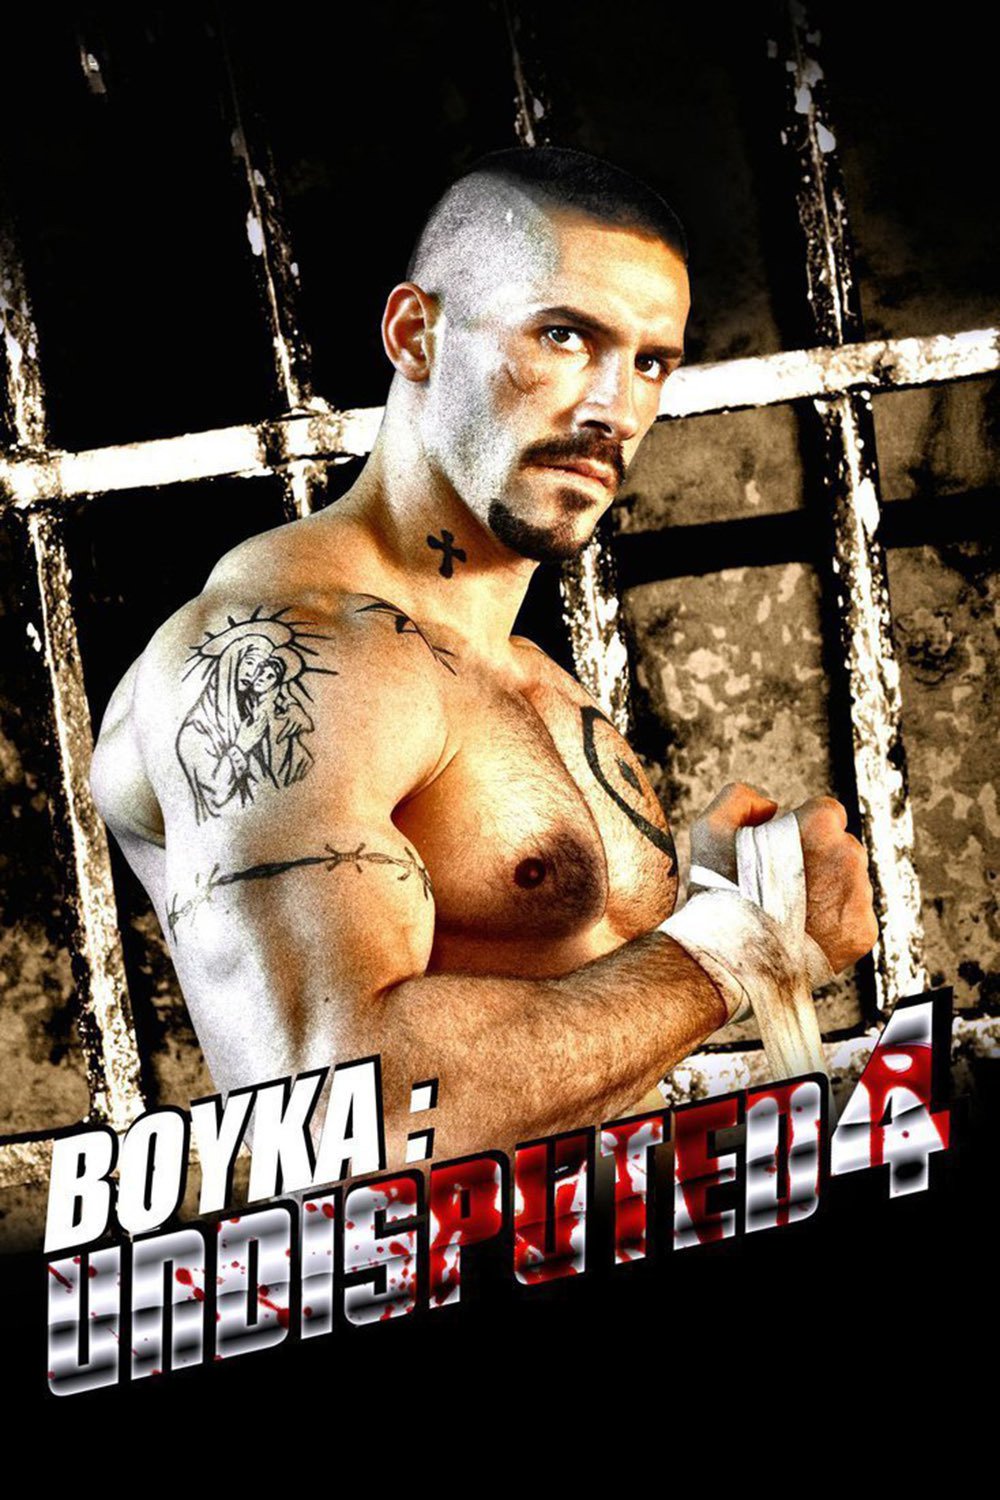 Plakat von "Undisputed IV - Boyka is back"